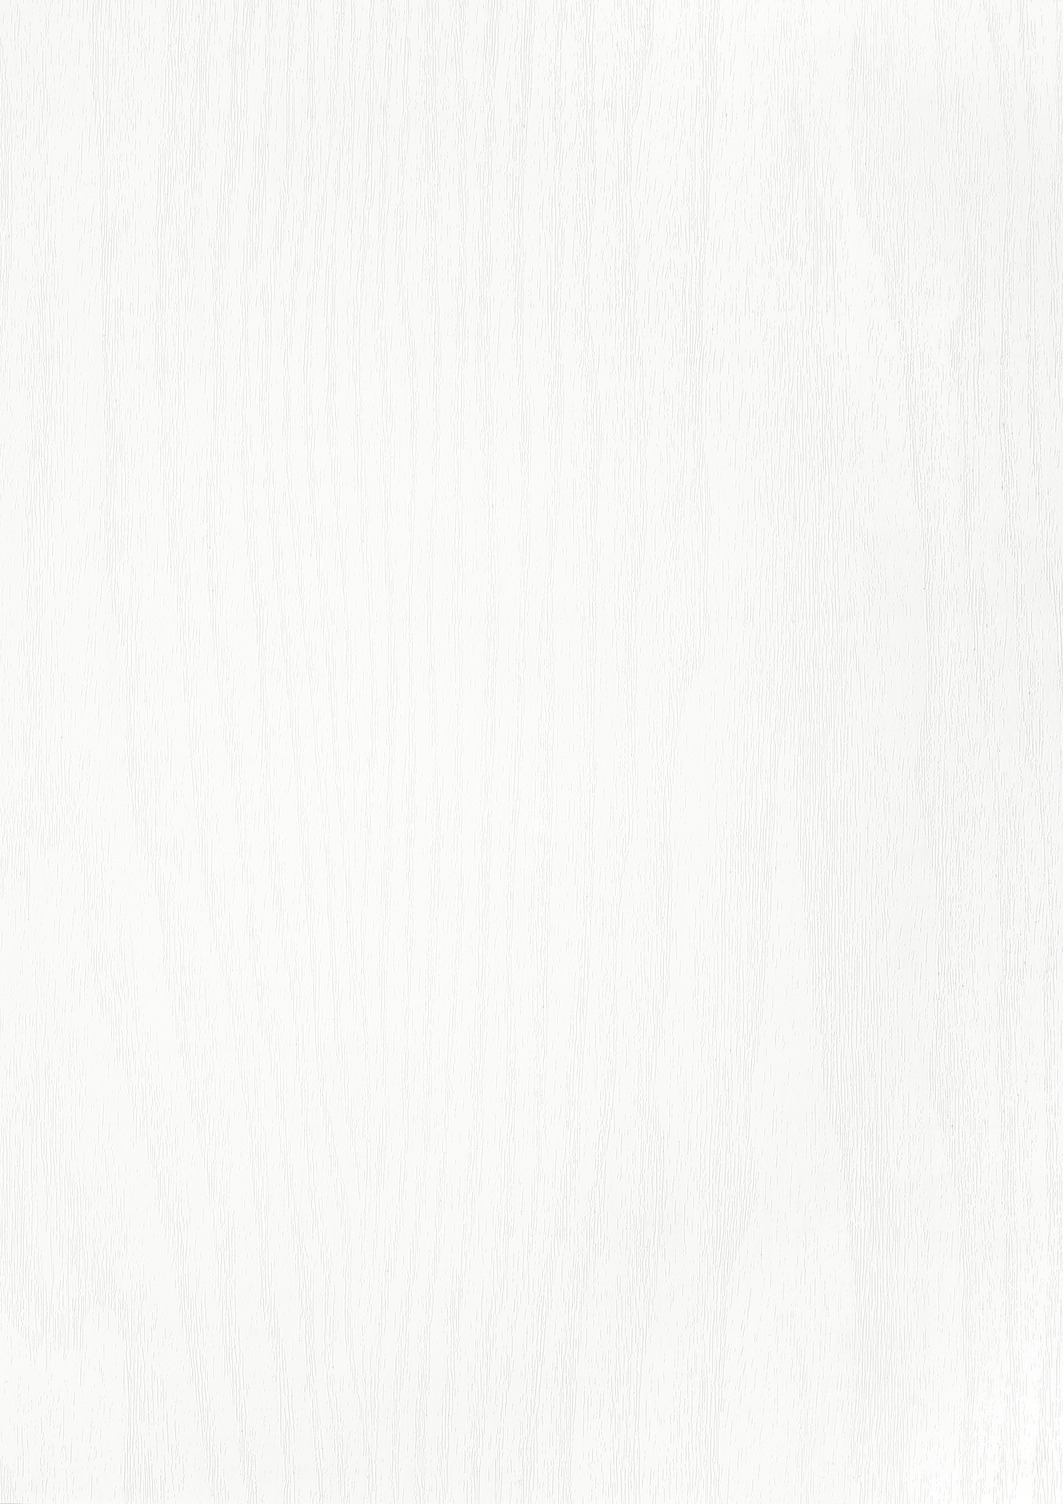 Træ folie - Hvidmalet træ - Mat - Vælg antal løbende meter-67,5 cm